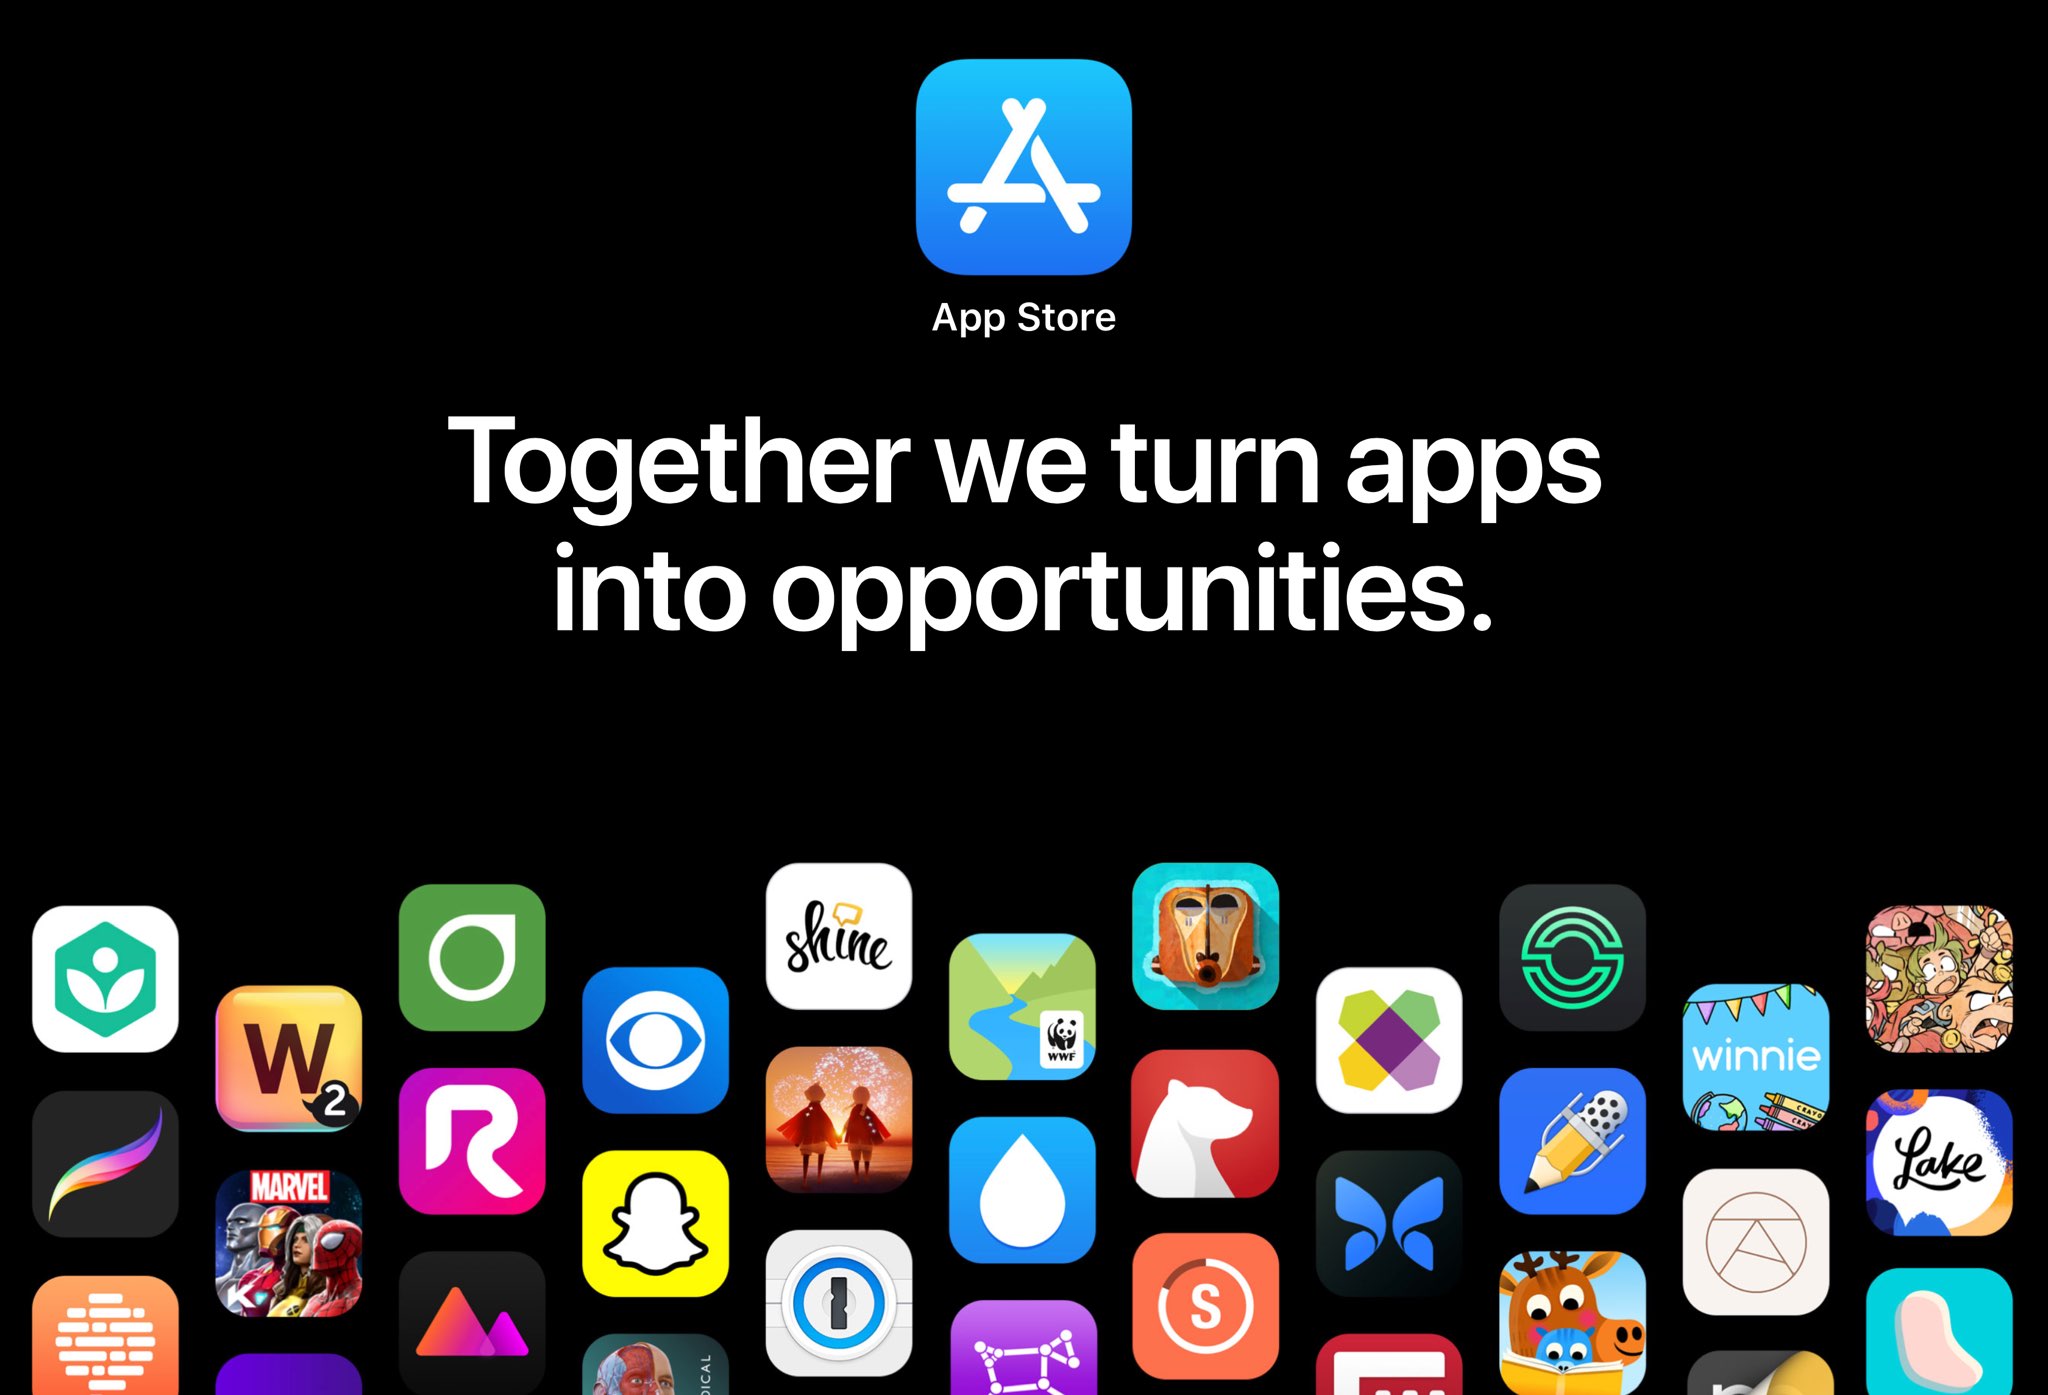 Bannière App Store montrant un tas d'icônes d'application